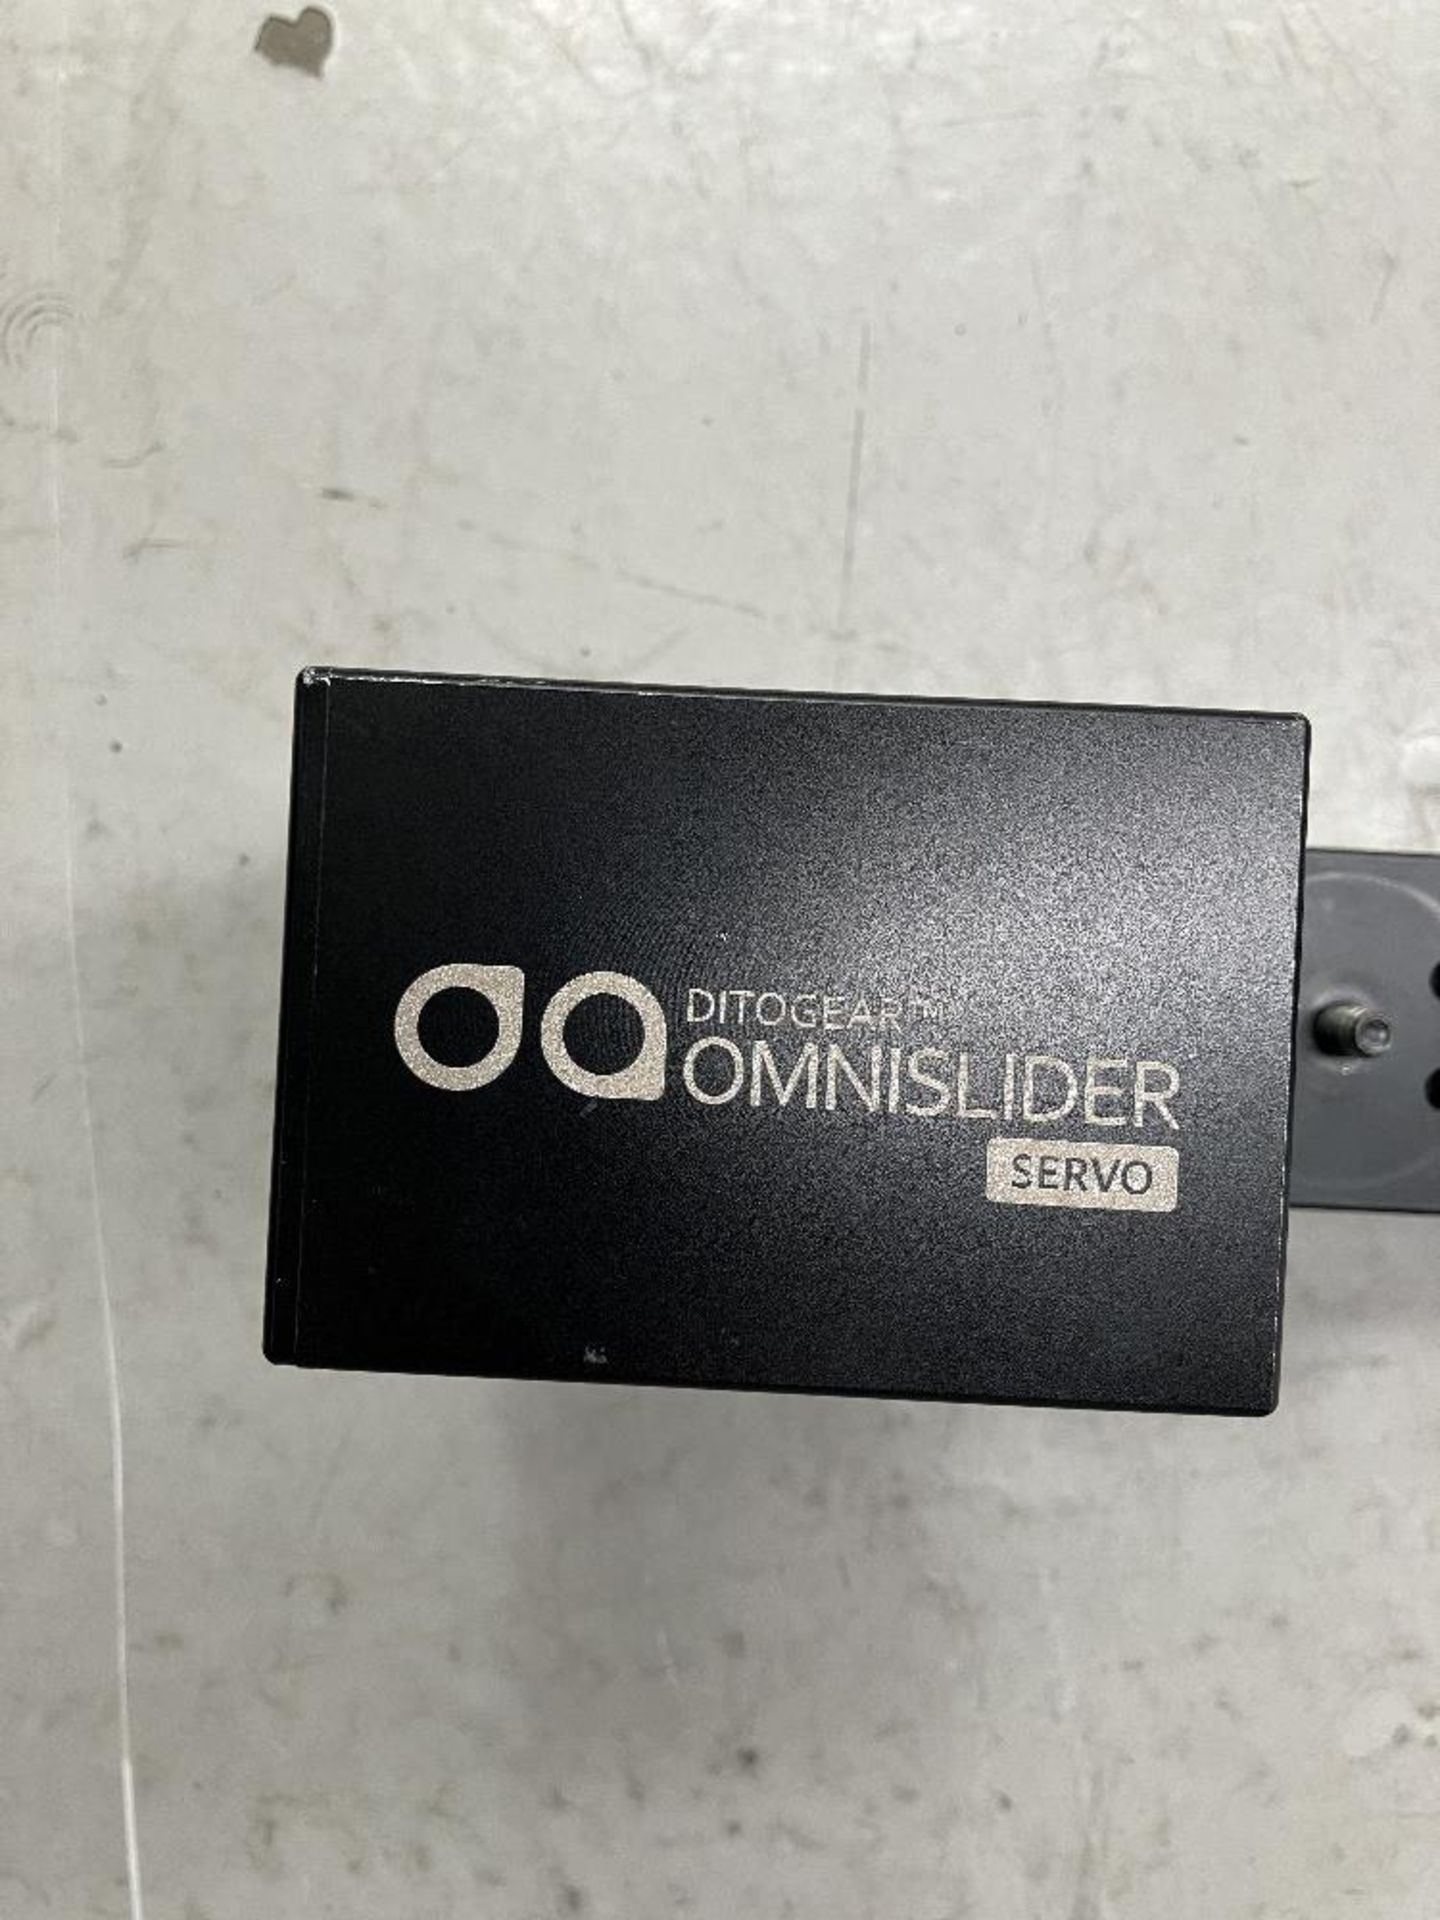 Dogear Omnislider Kit - Image 4 of 18